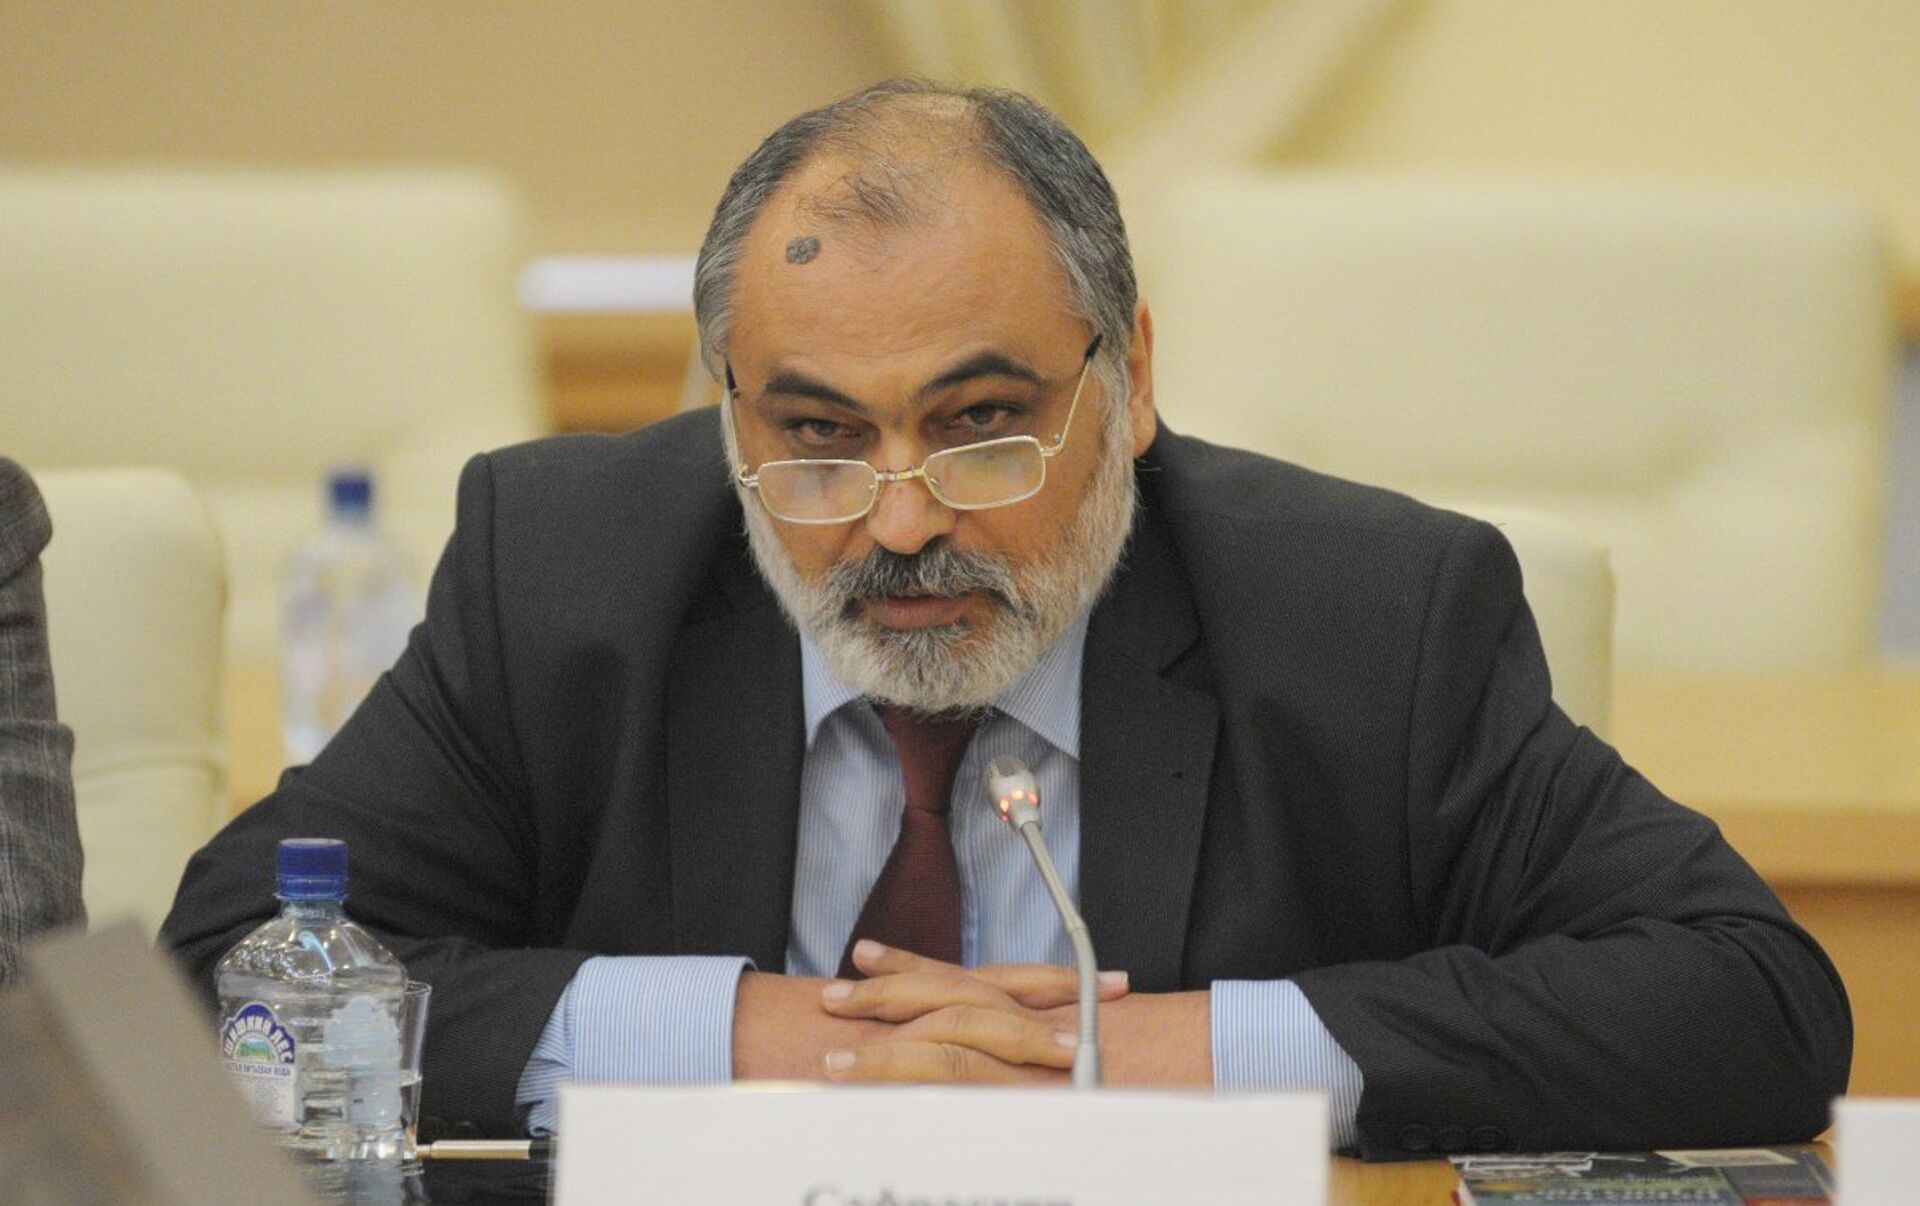 Profesör Safrastyan: Ermenistan-Türkiye uzlaşma süreci ilerlemiyor ve bunun sorumlusu Türk tarafı